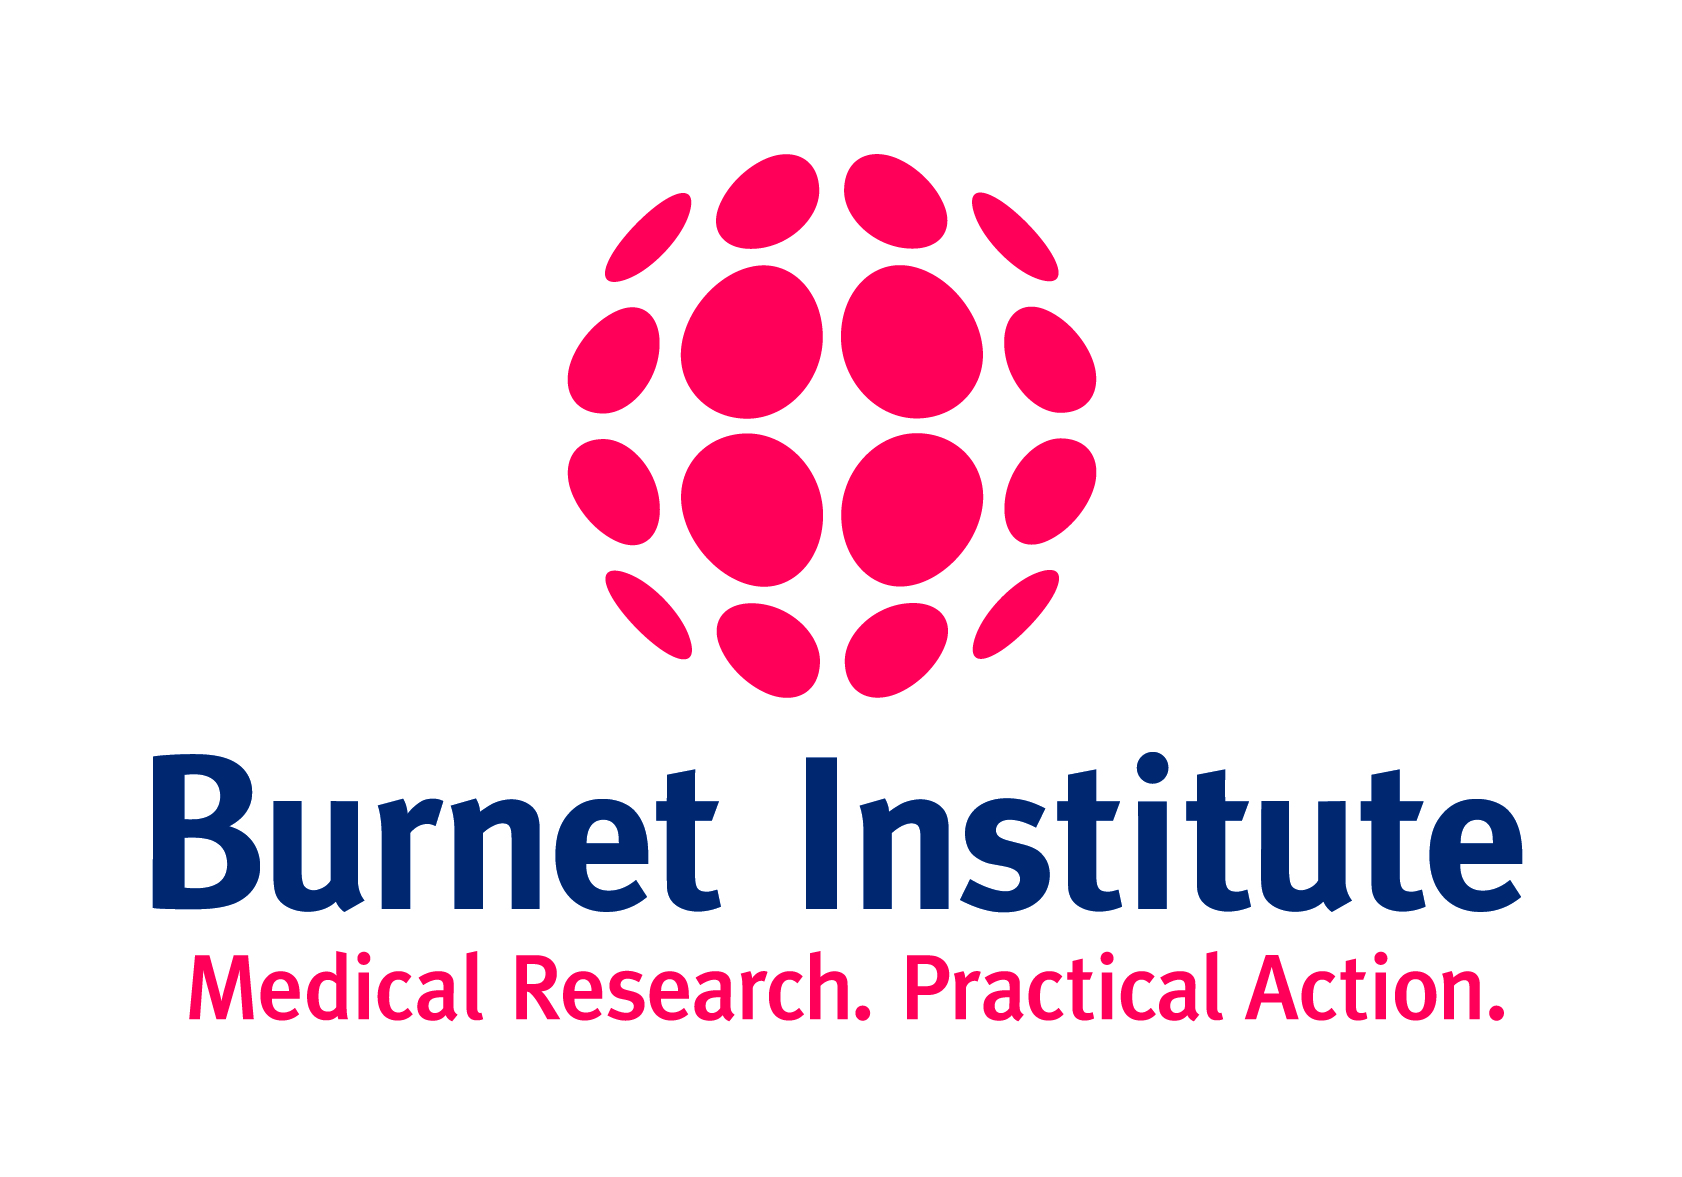 Burnet Institute logo